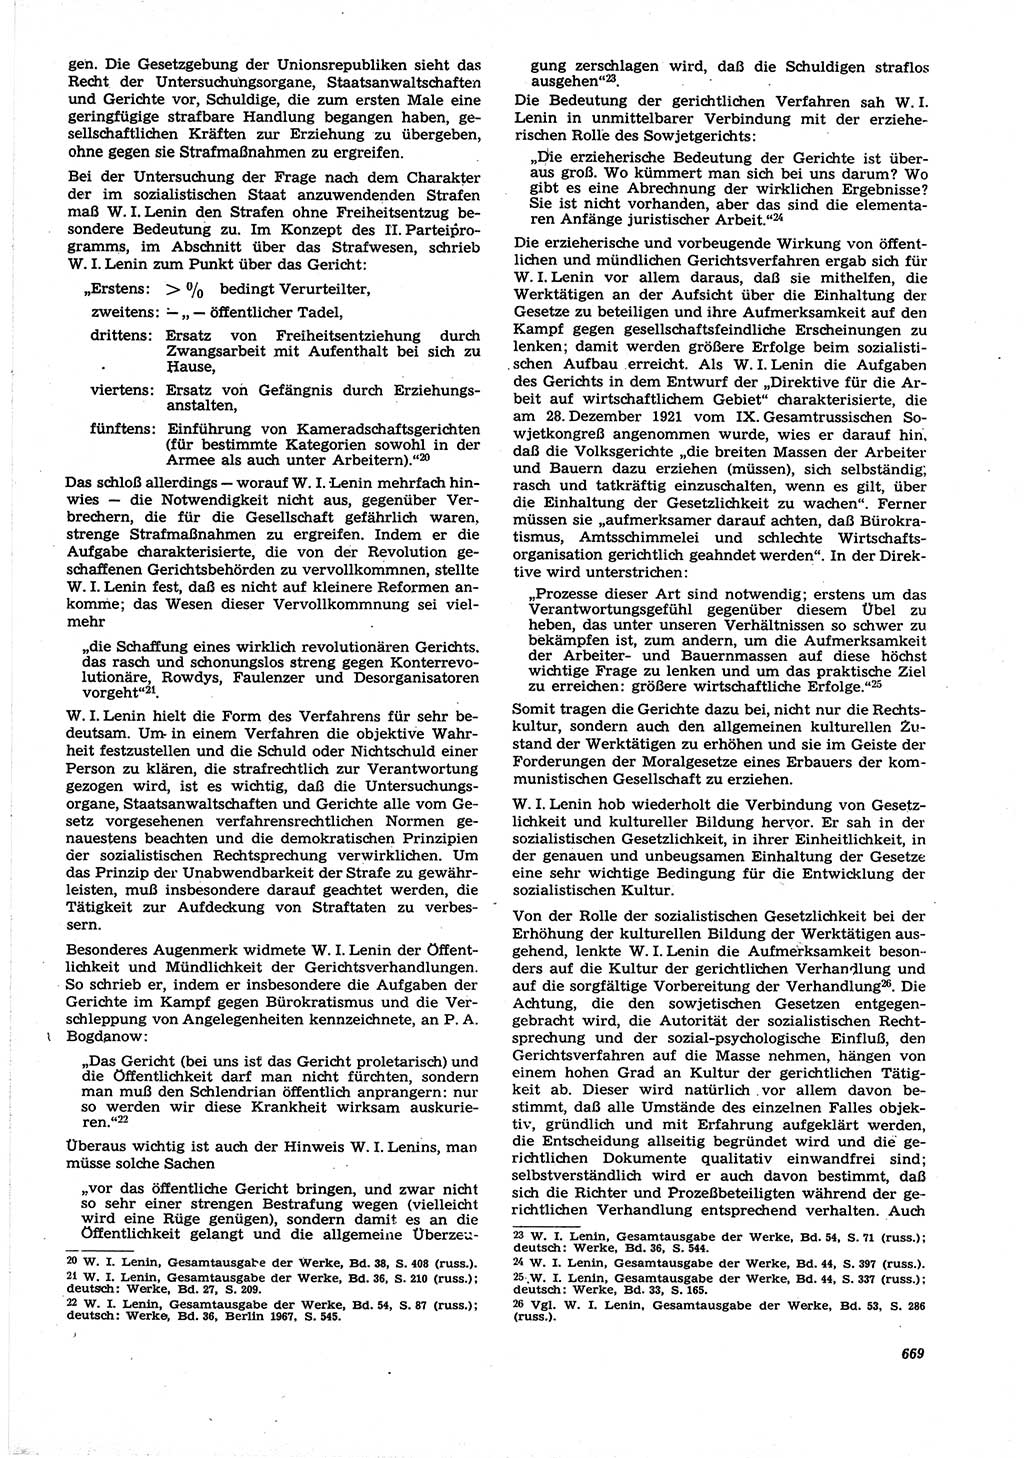 Neue Justiz (NJ), Zeitschrift für Recht und Rechtswissenschaft [Deutsche Demokratische Republik (DDR)], 21. Jahrgang 1967, Seite 669 (NJ DDR 1967, S. 669)